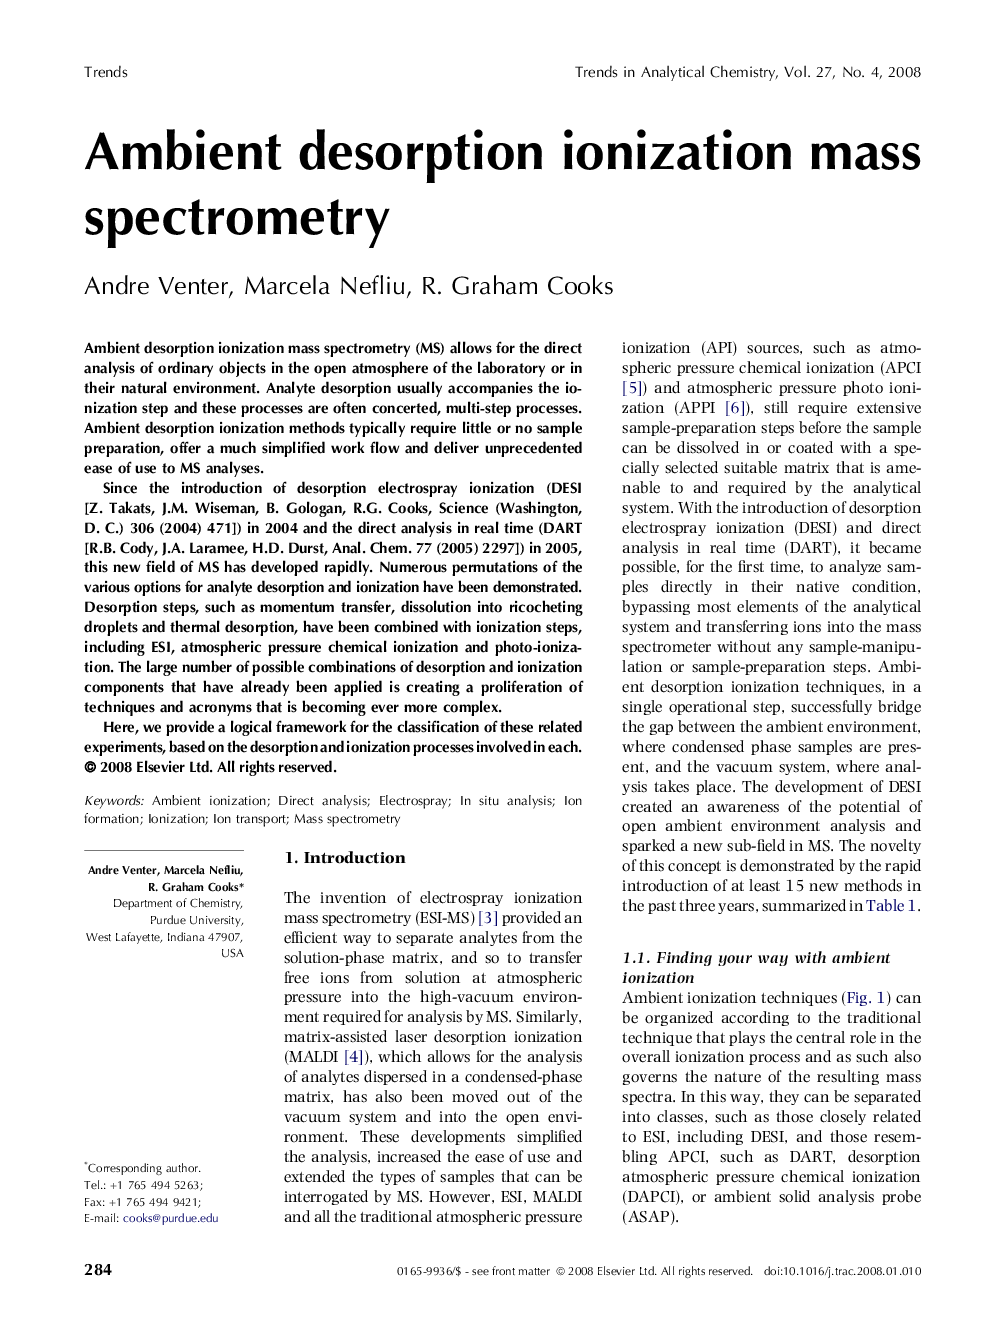 Ambient desorption ionization mass spectrometry